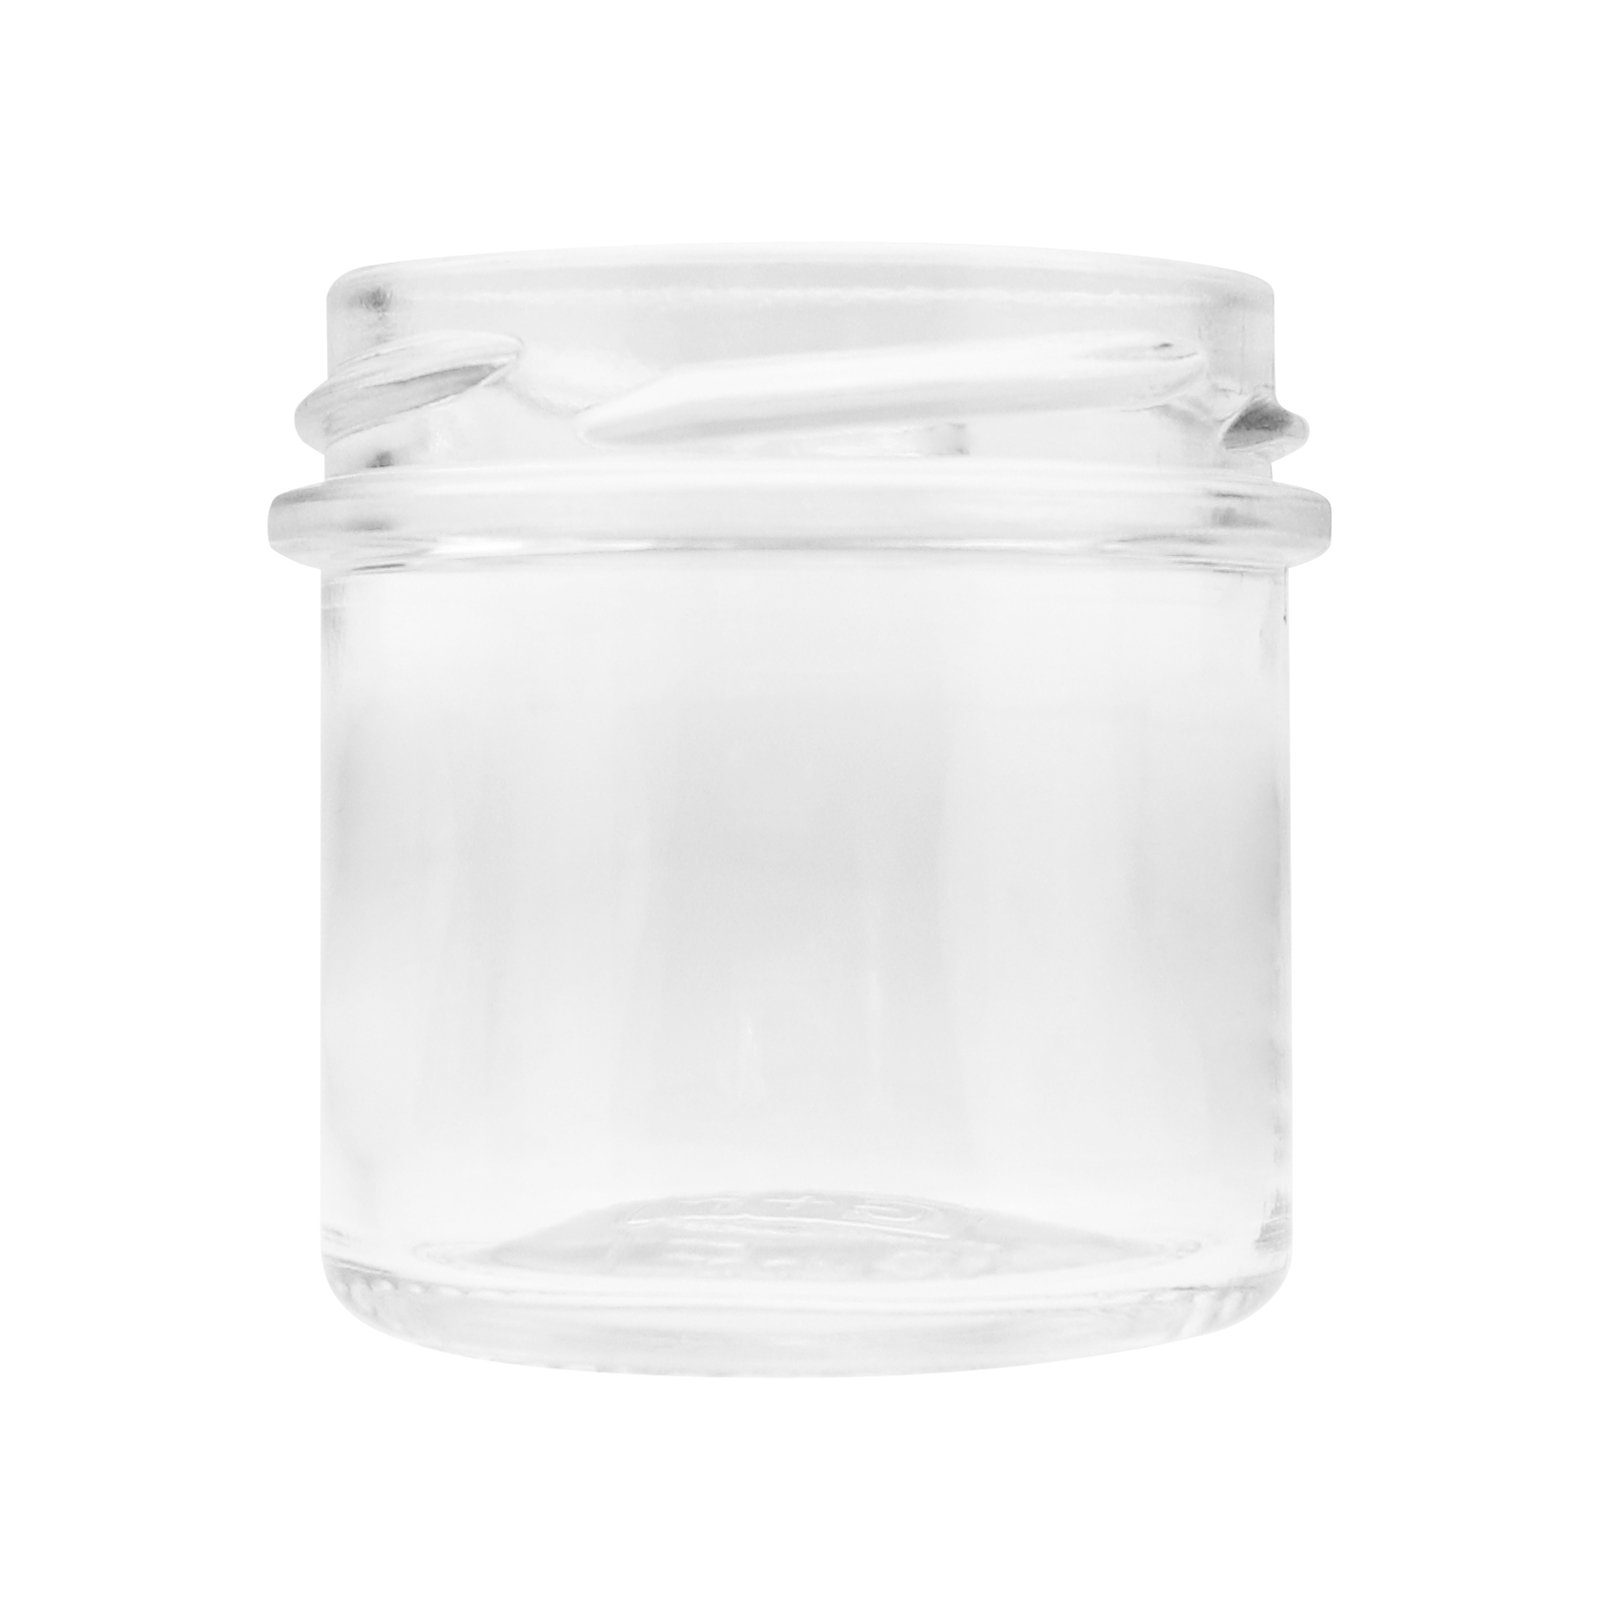 (xH), (12-tlg) 5,5 cm Schraubdeckel x Vorratsglas - 5,5 Einmachgläser Wellgro 72 mit ml,